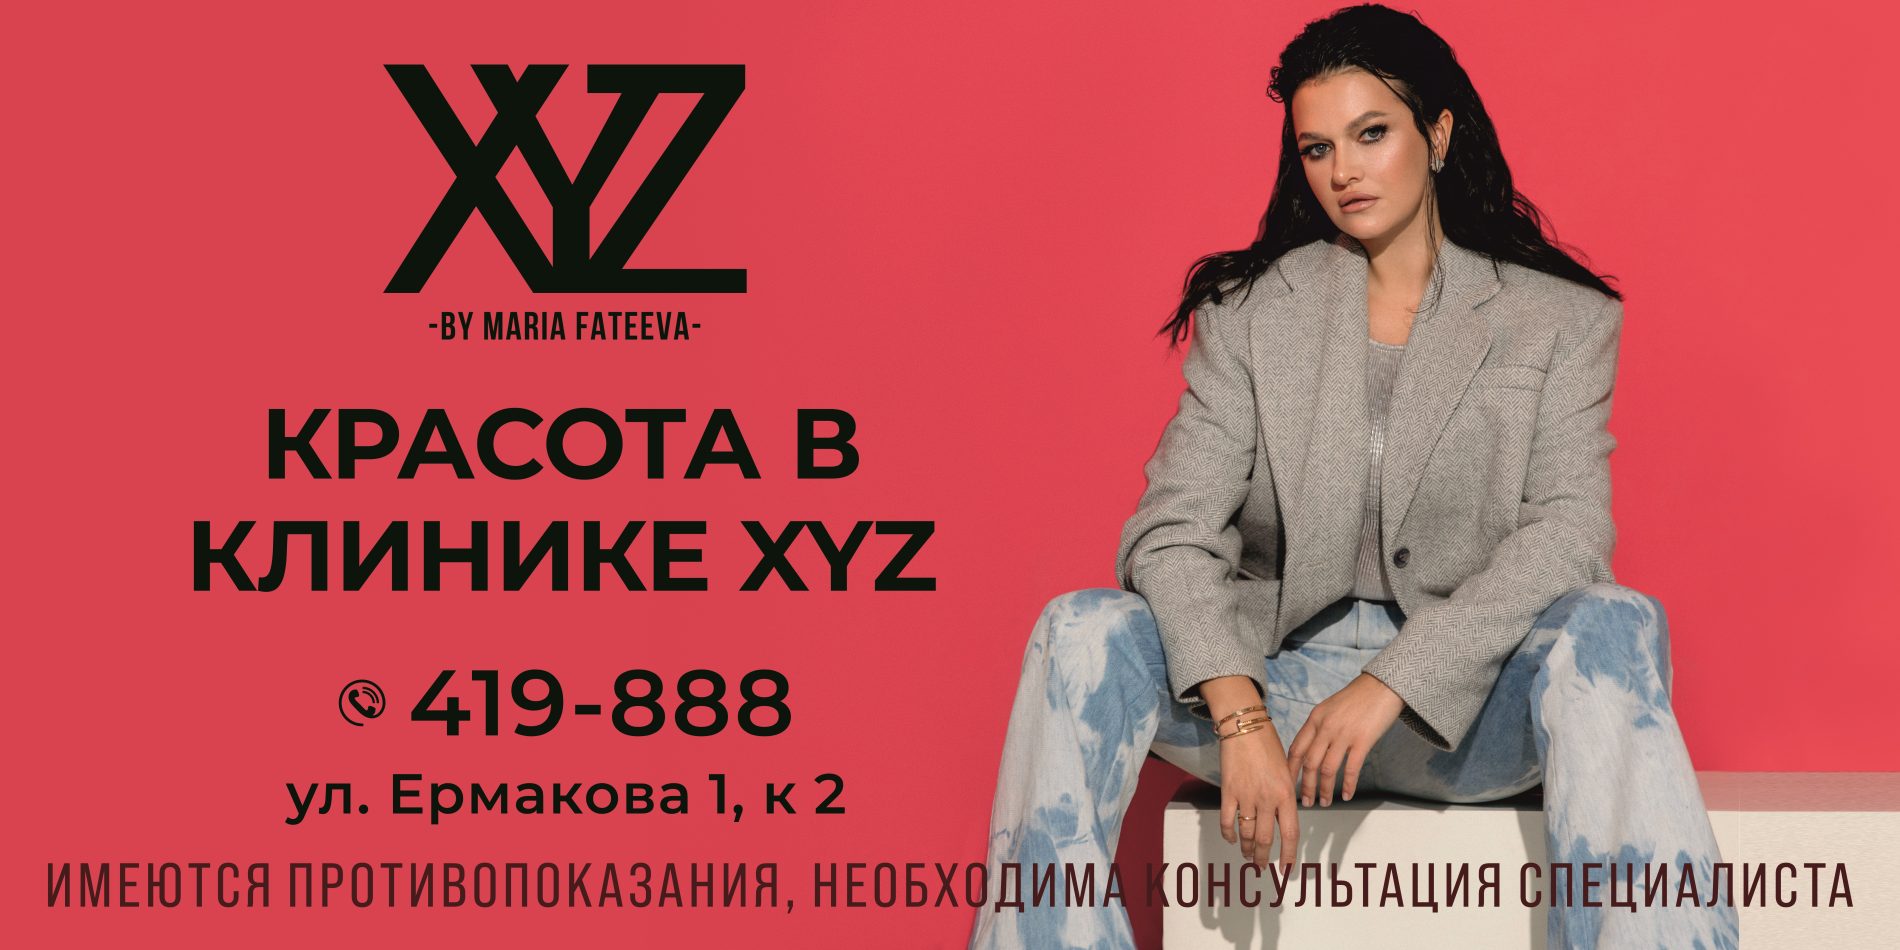 Известная клиника «XYZ» в Костроме будет работать под собственным товарным знаком